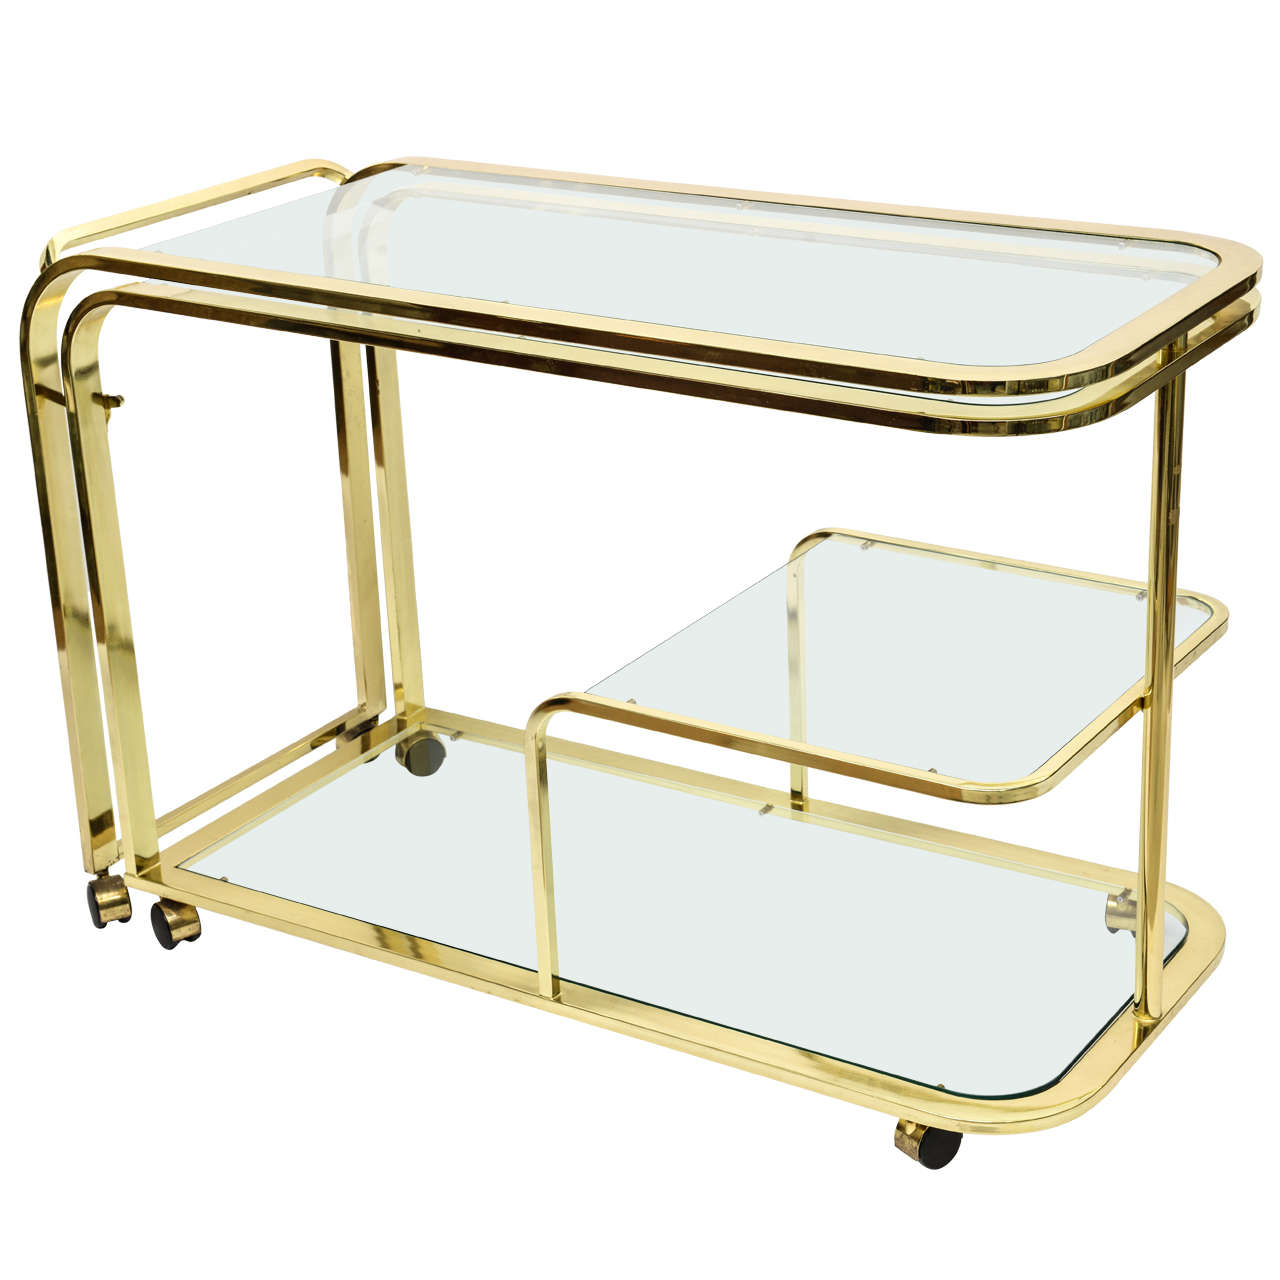 Three Tier Brass & Glass Bar Cart